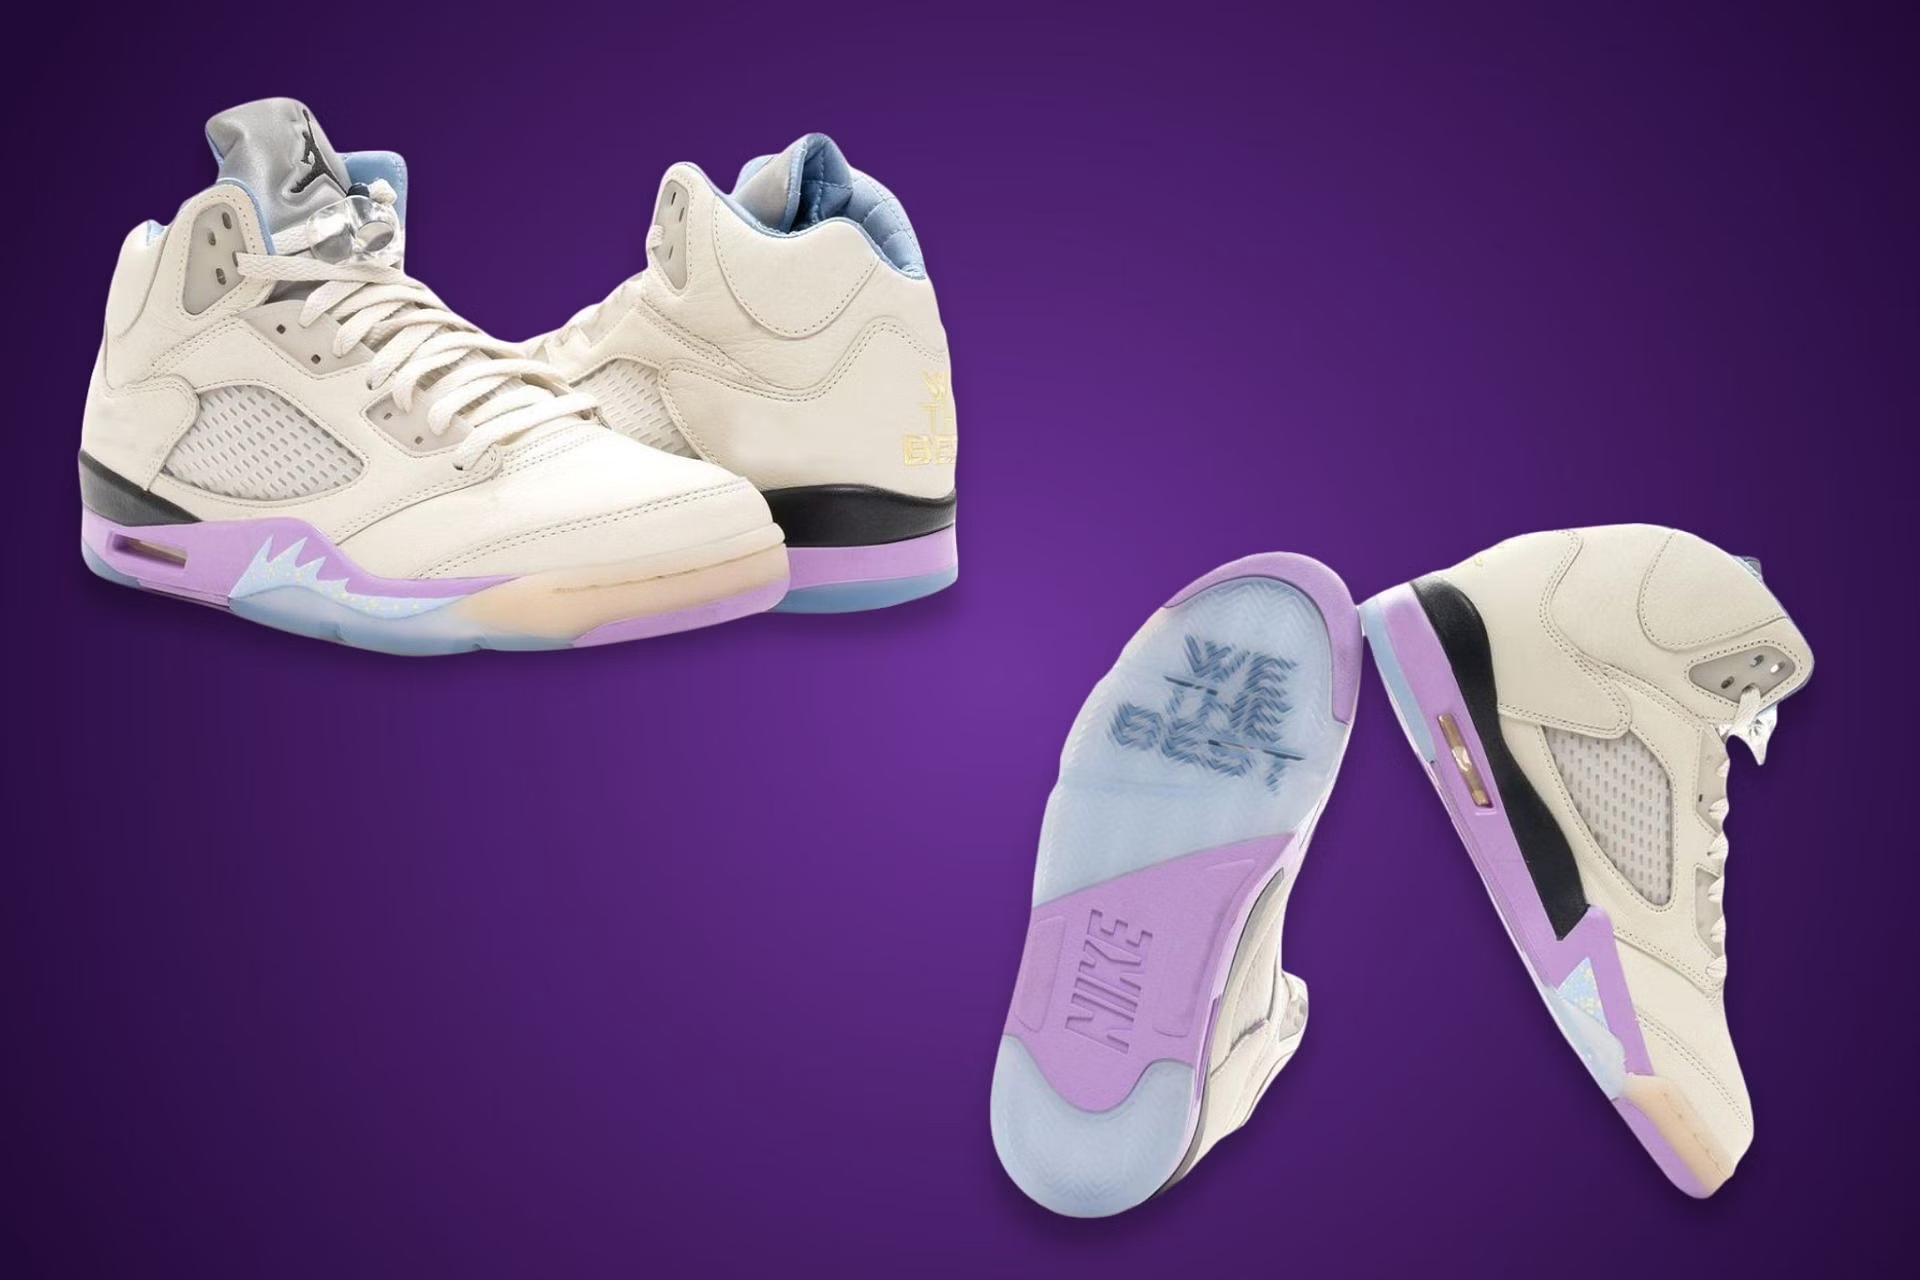 DJ Khaled x Air Jordan 5 Retro ‘We The Best-Sail’: A Sneakerhead's Dream